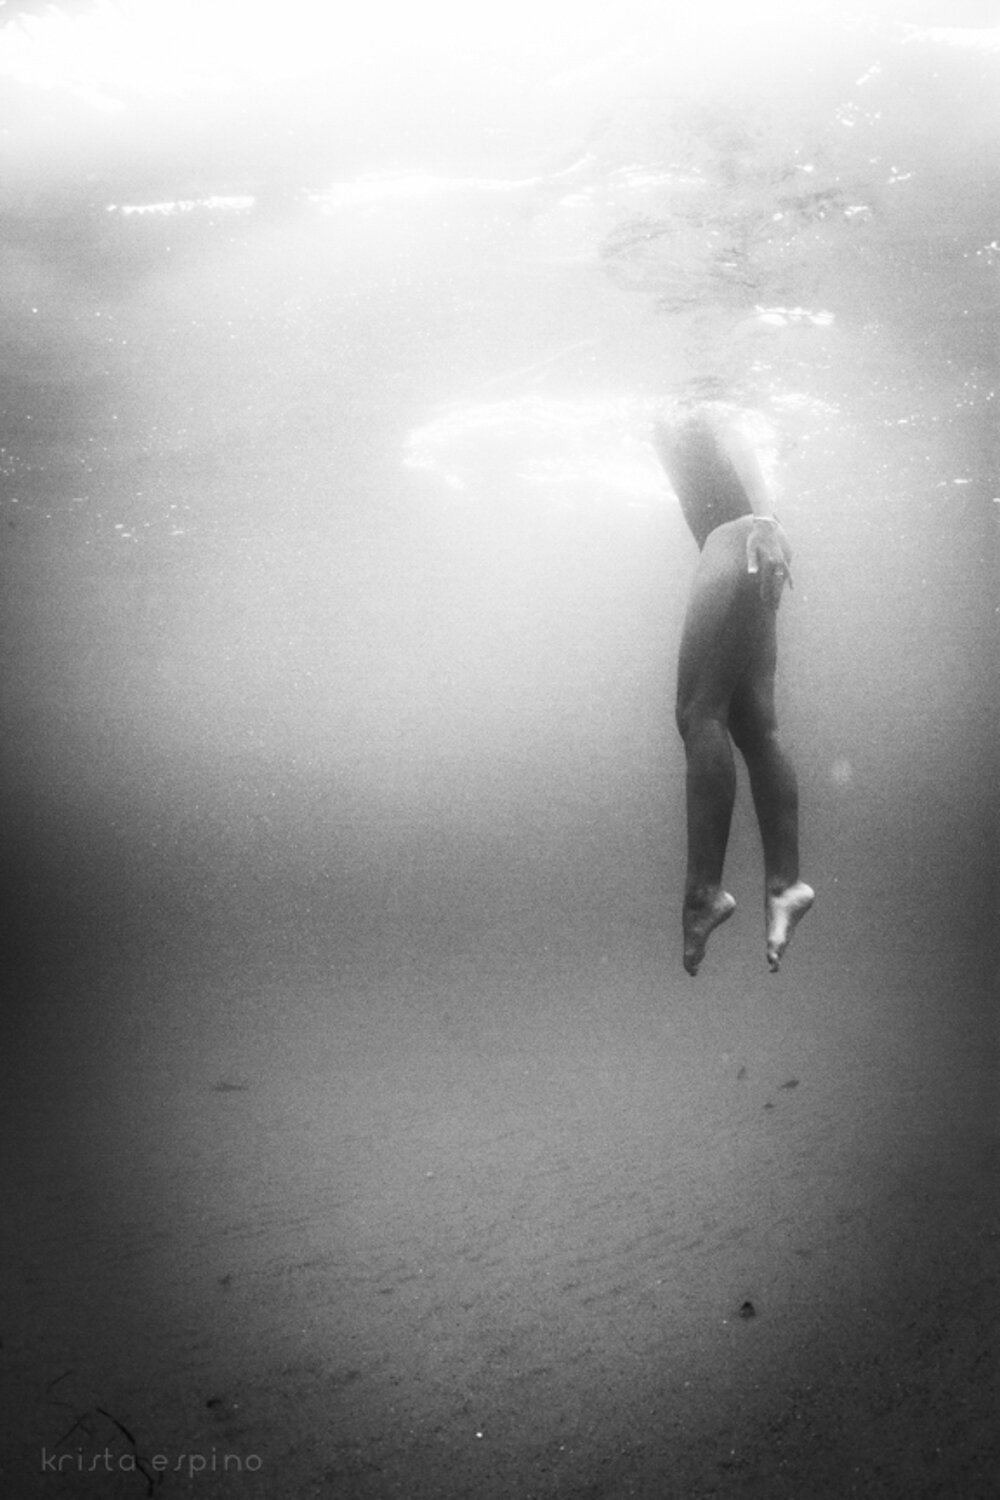 bodysurf swim wave laguna orange county waves underwater surf surfing lifestyle ocean beach nature photography photographer krista espino_-2.jpg